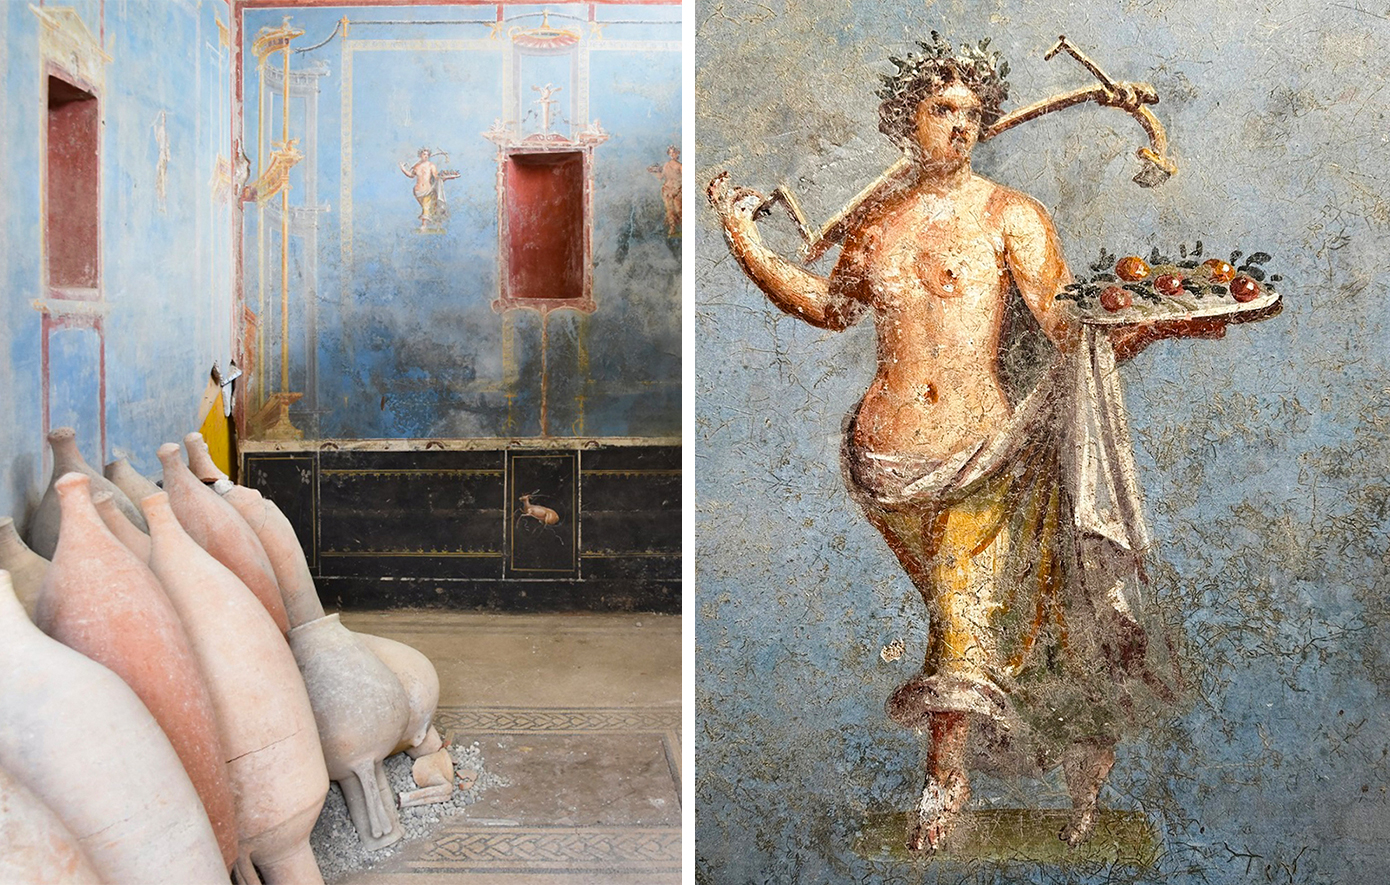 Σπάνιο μπλε δωμάτιο με τοιχογραφίες ανακαλύφθηκε στην Πομπηία – Εντυπωσιακές φωτογραφίες